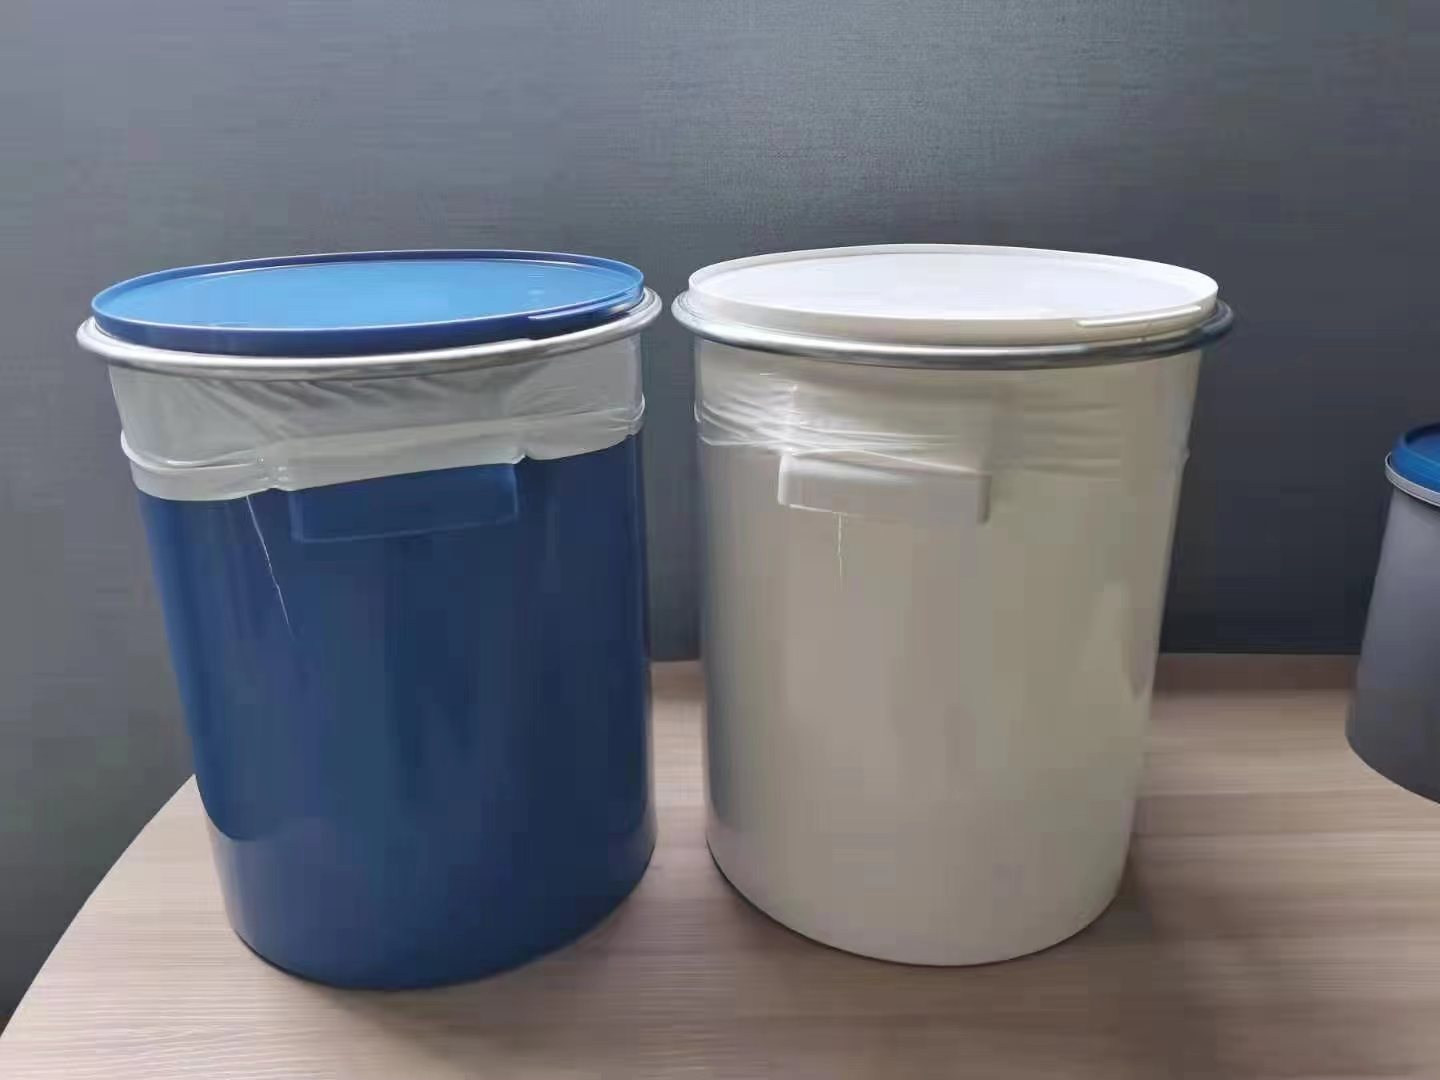 江苏常州阳明塑料定制生产销售塑料美式桶-280mm硅胶包箍直口桶